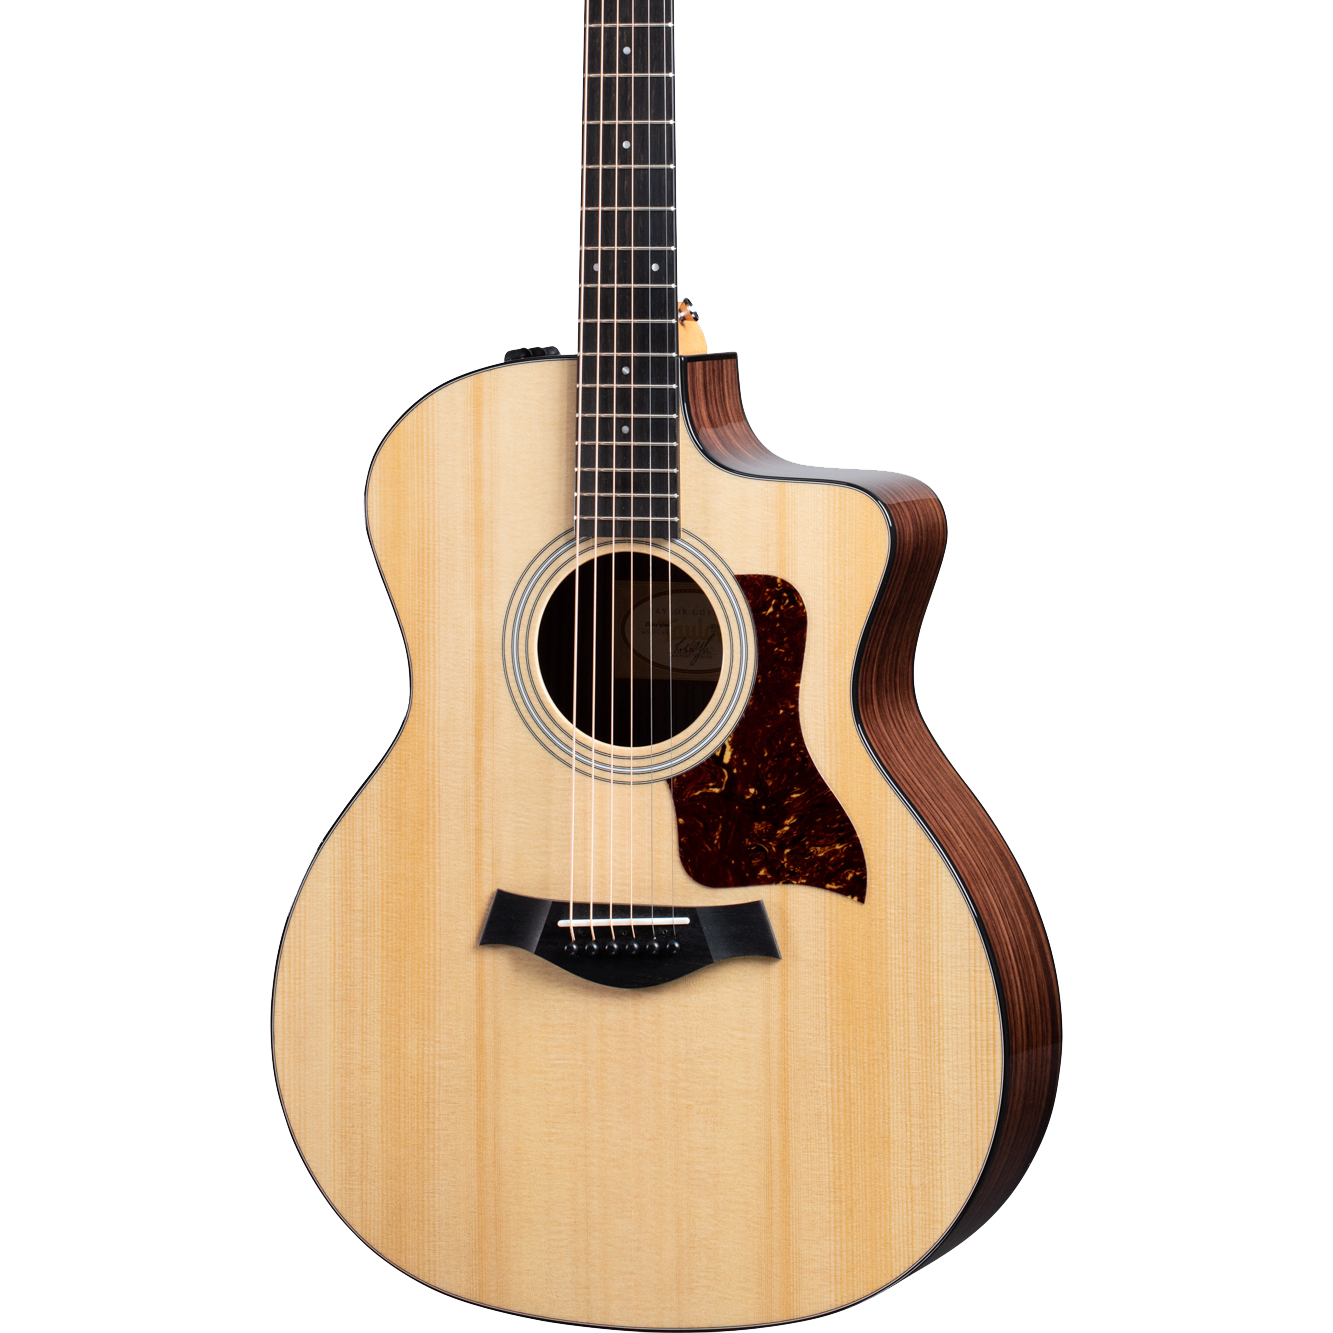 Taylor 214ce Plus Acoustic guitar body in Natural color Tone Shop Guitars DFW